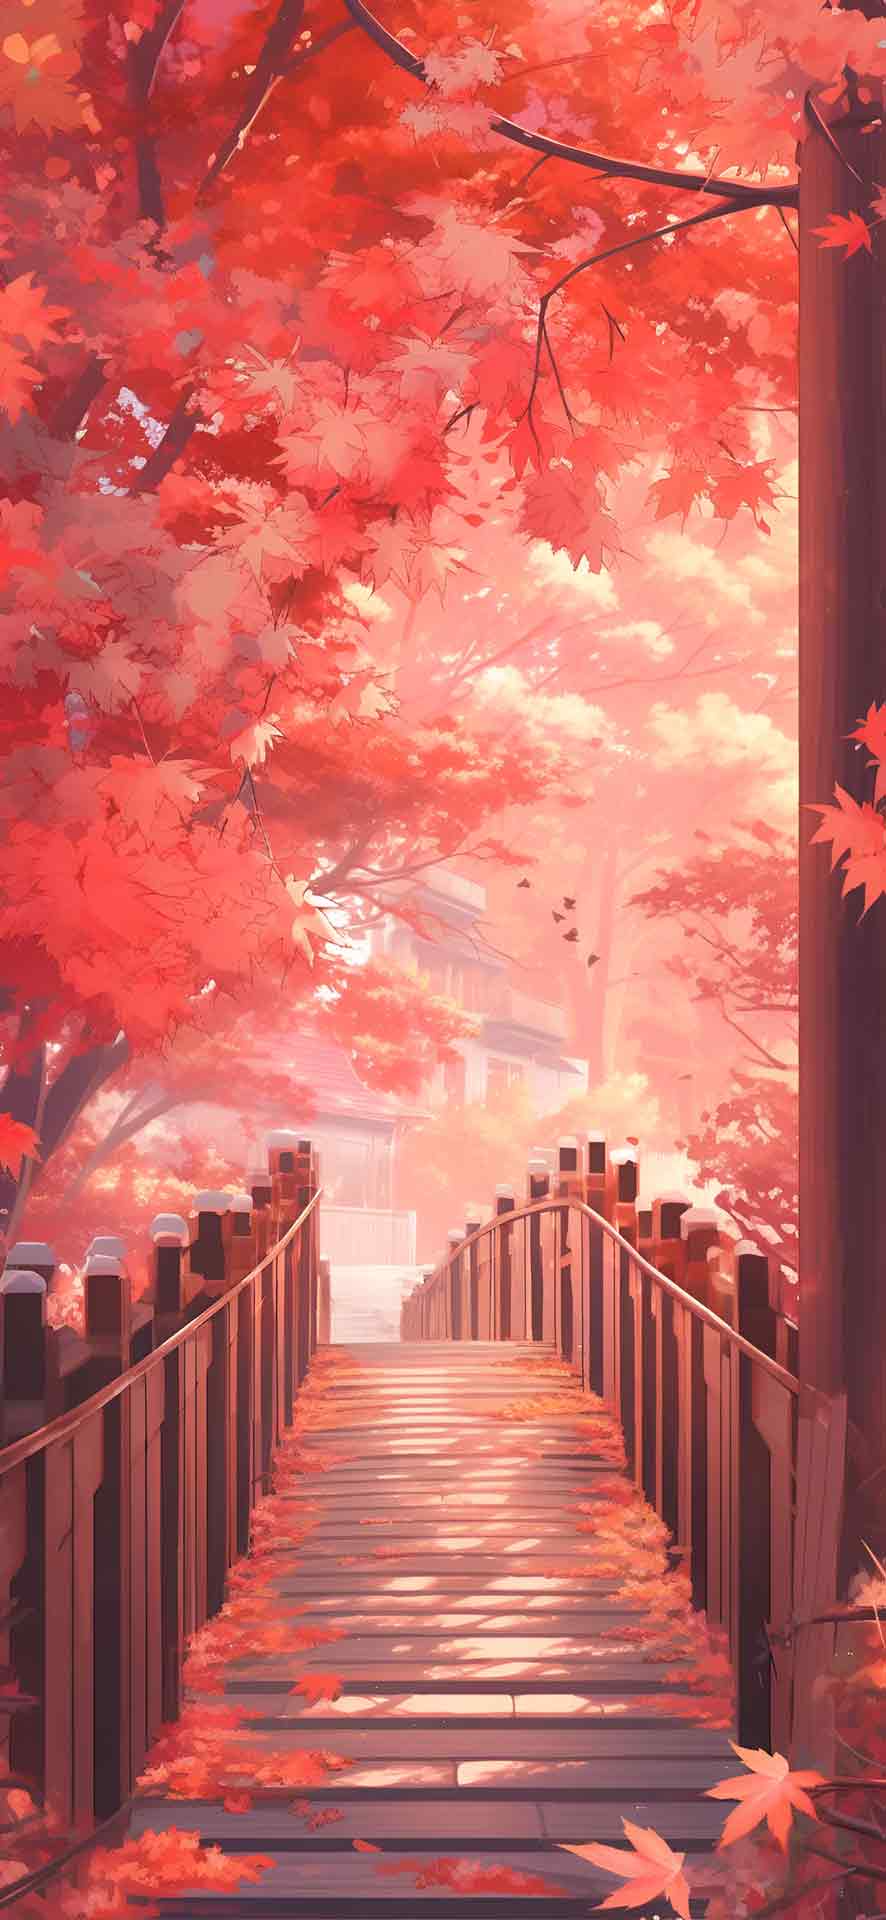 秋天的桥梁与红枫叶壁纸